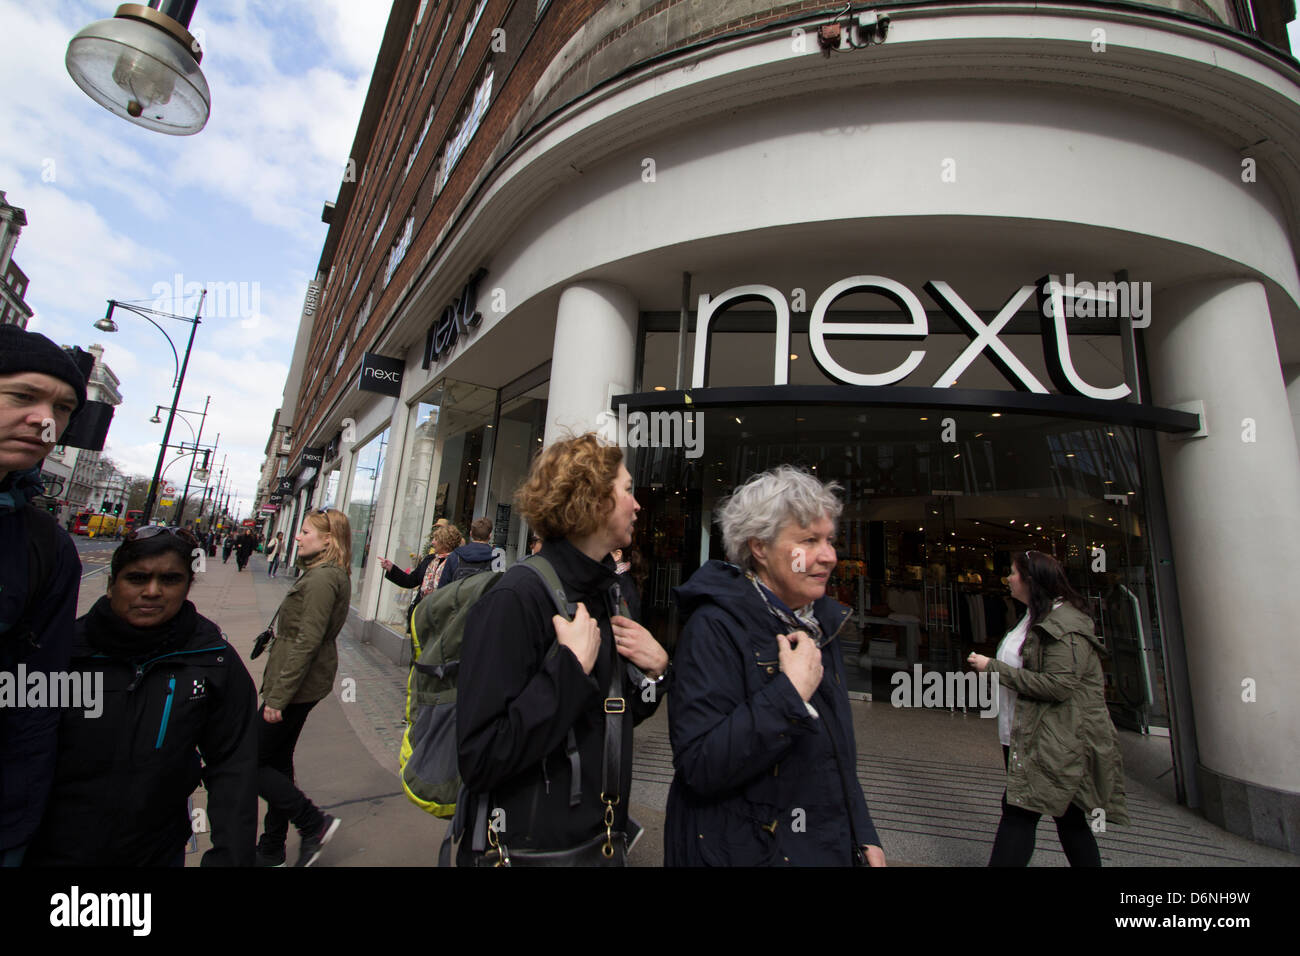 next retail clothing store Oxford street London Stock Photo